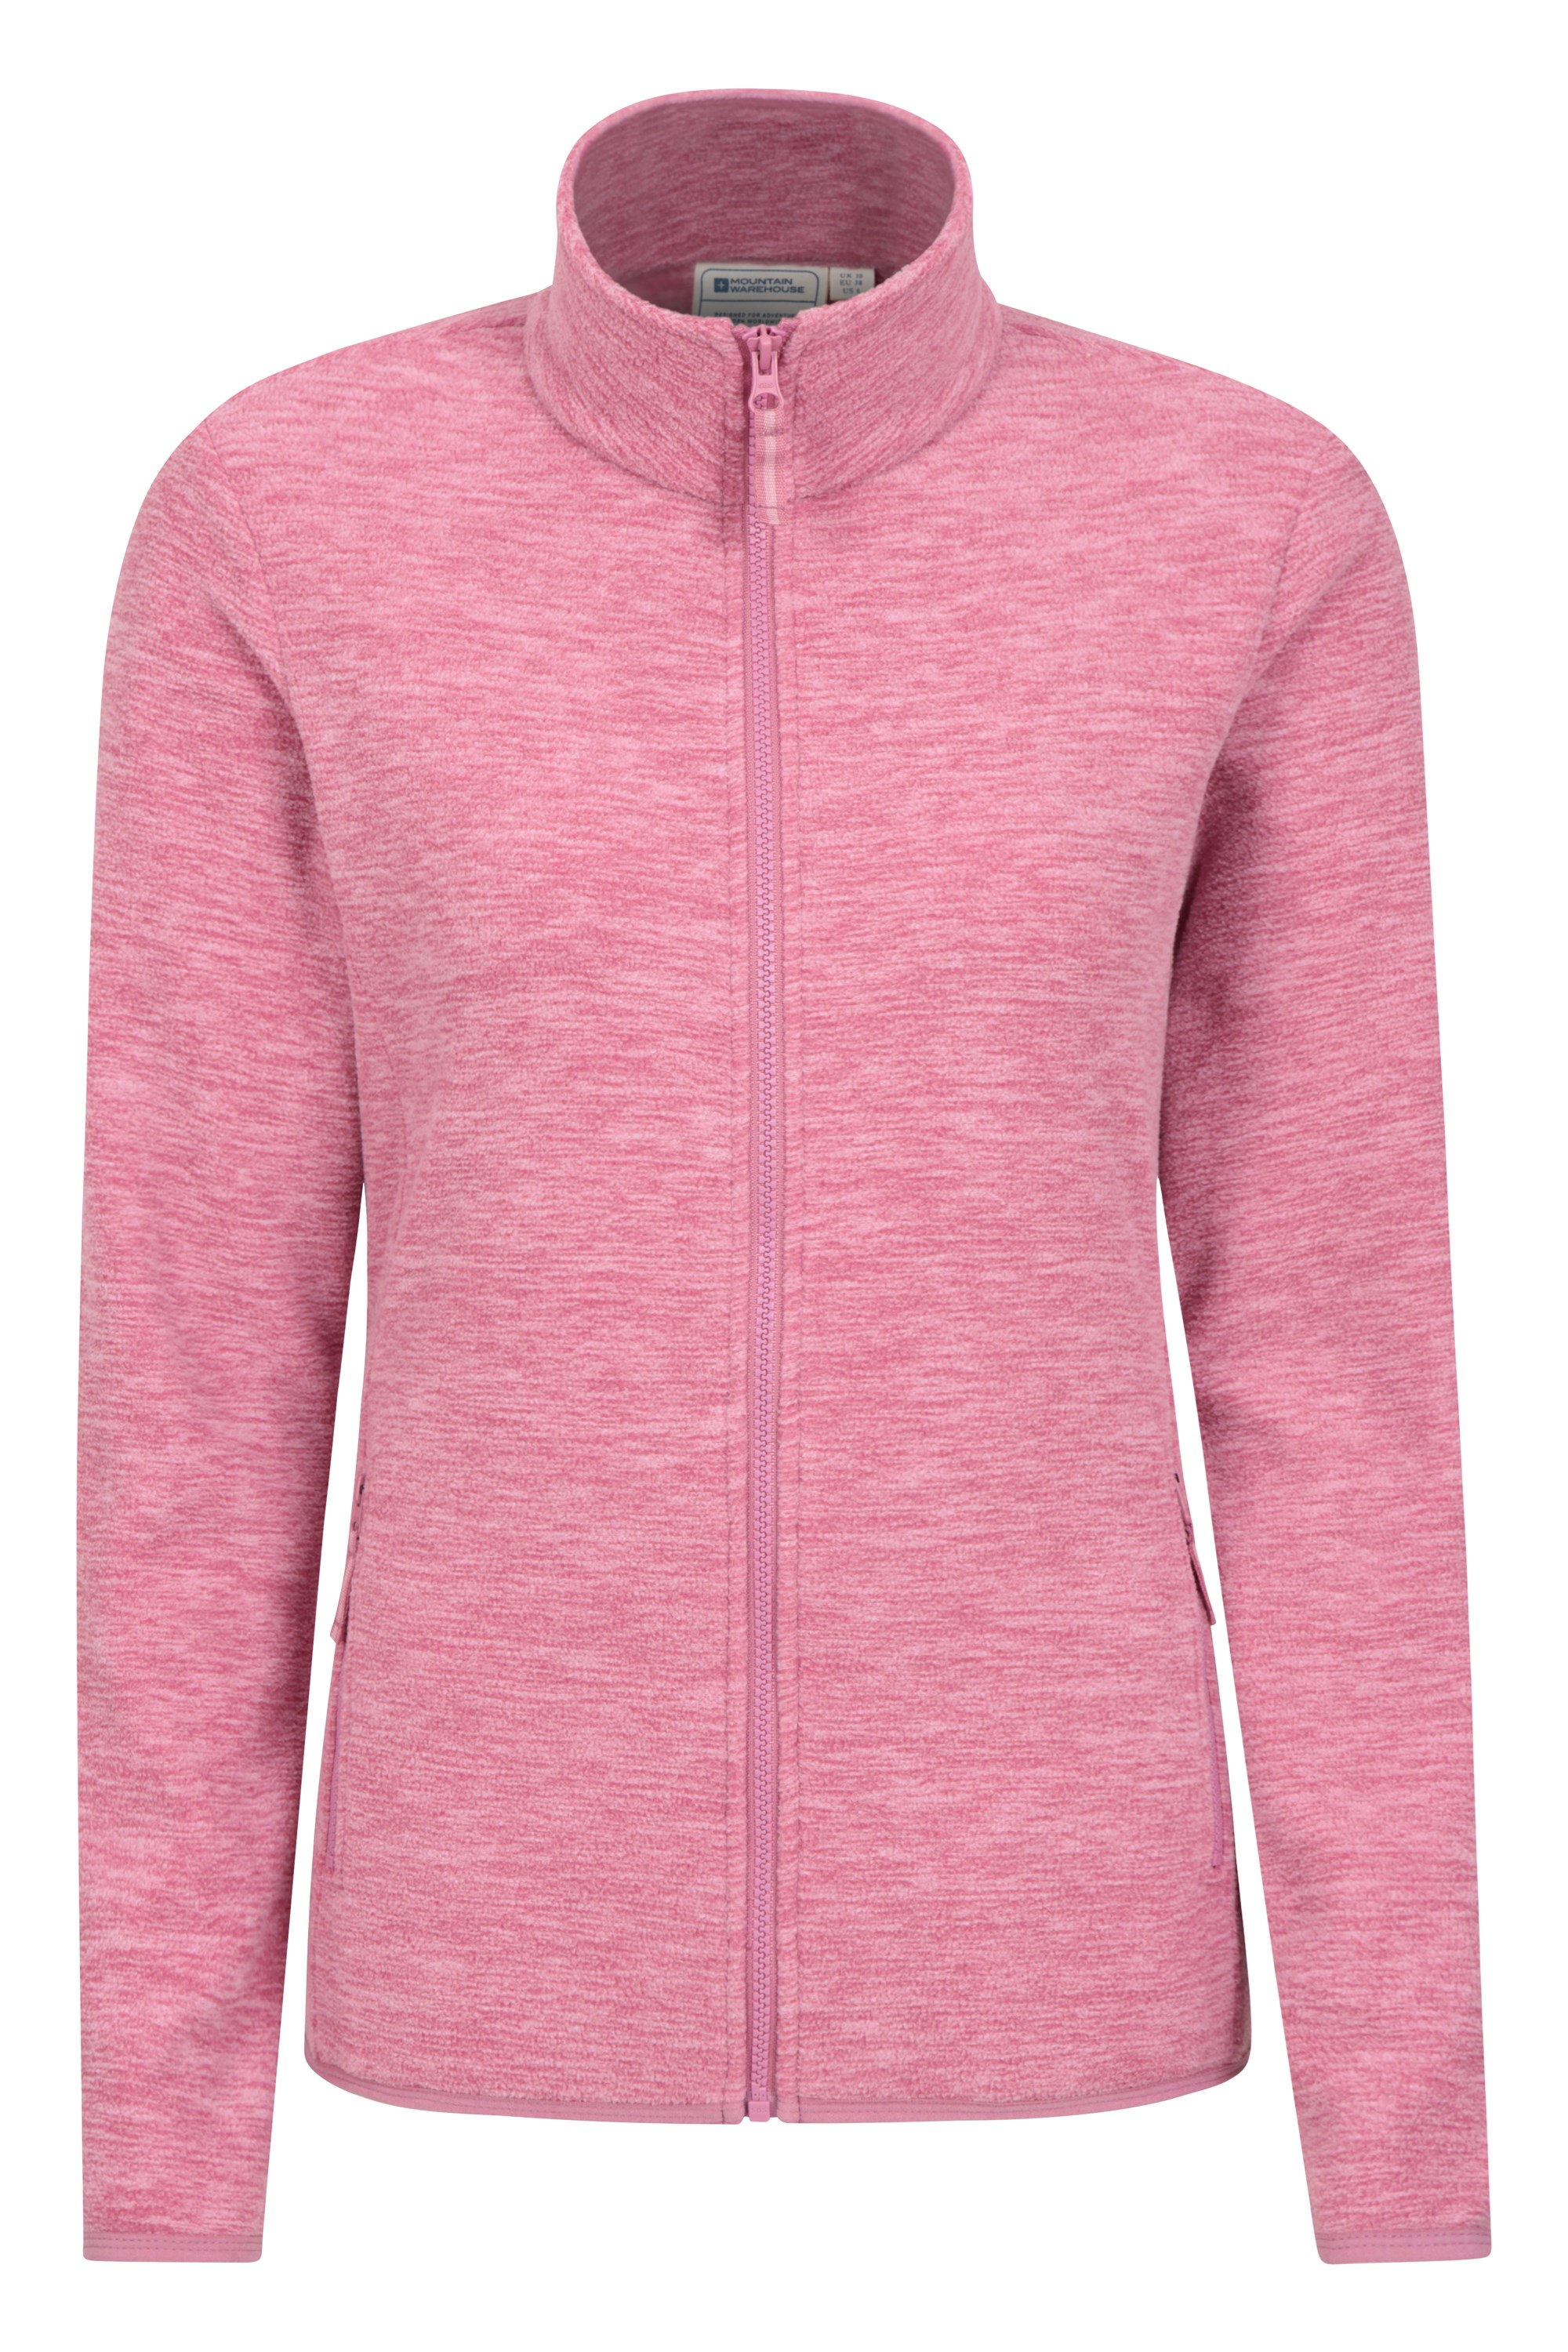 Snowdon Melange Ii Womens Full-zip Fleece - Pink